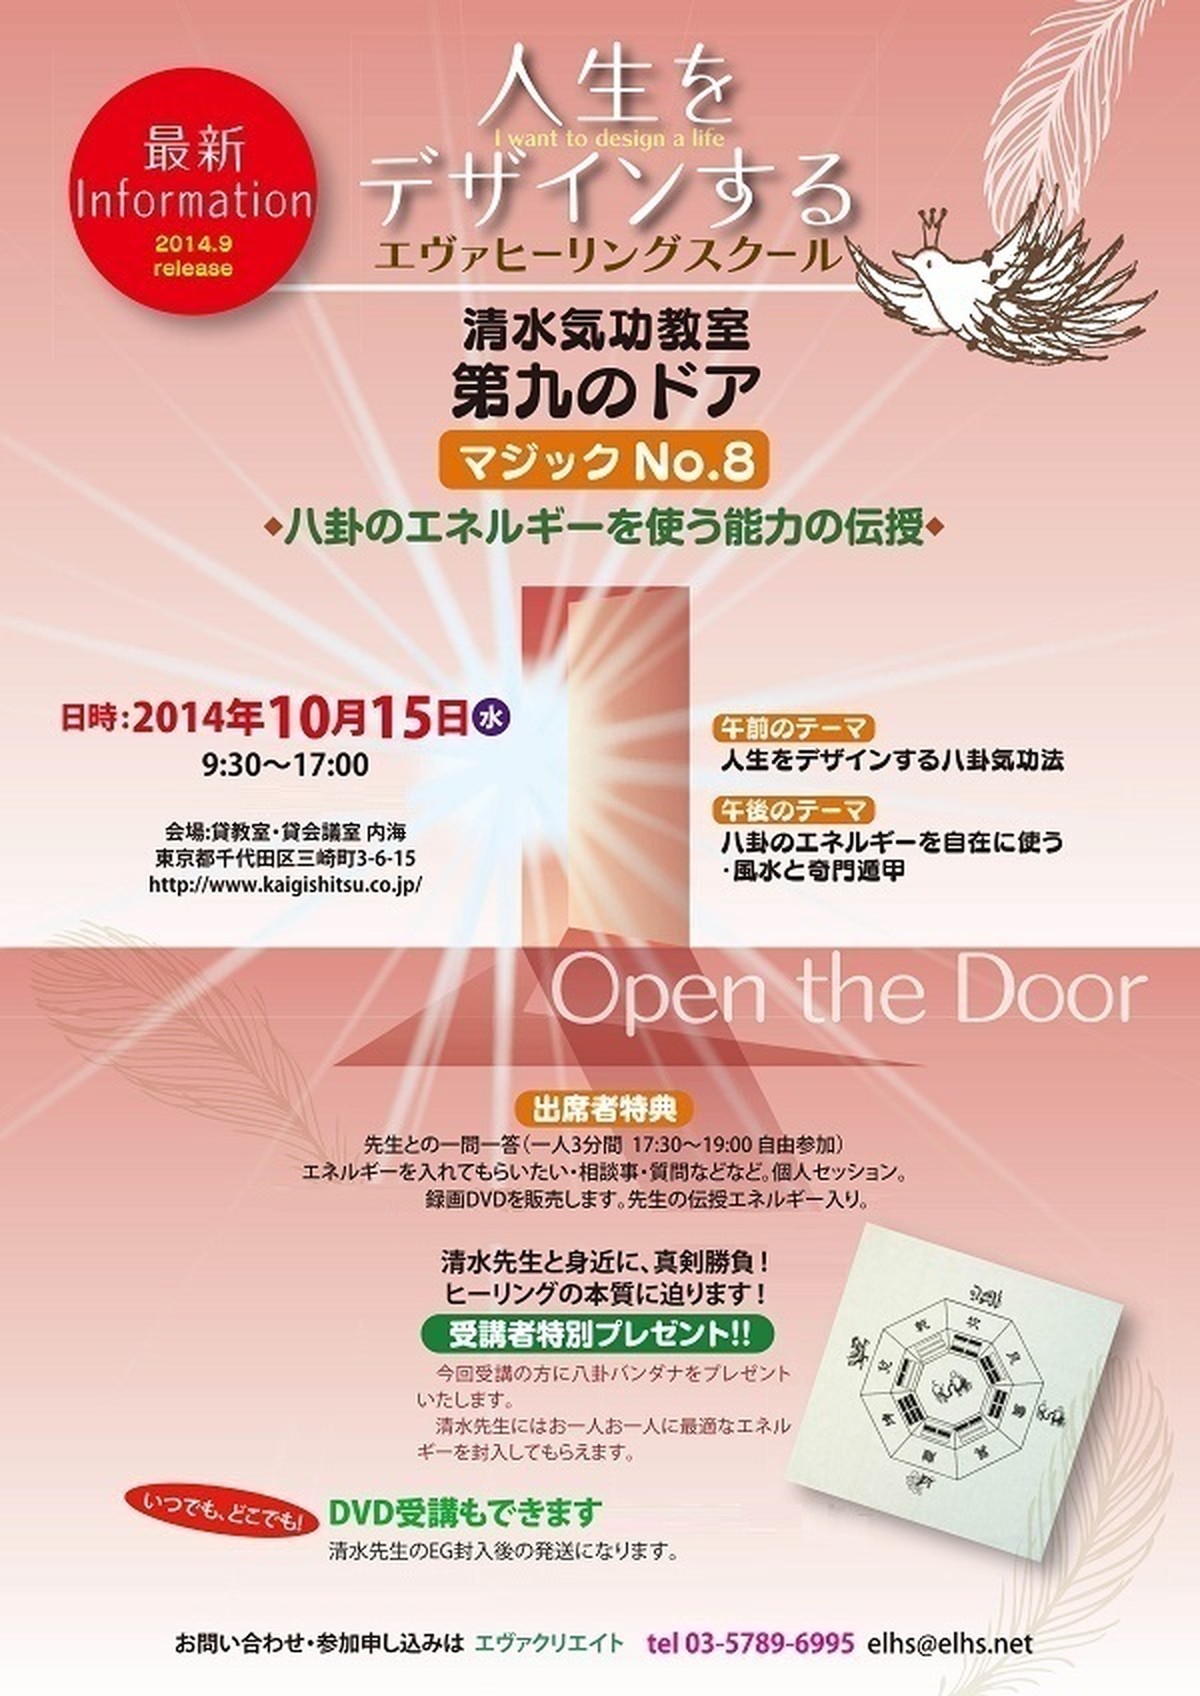 清水義久先生 気と意識 波動の技術 神道の世界 第７回DVD -